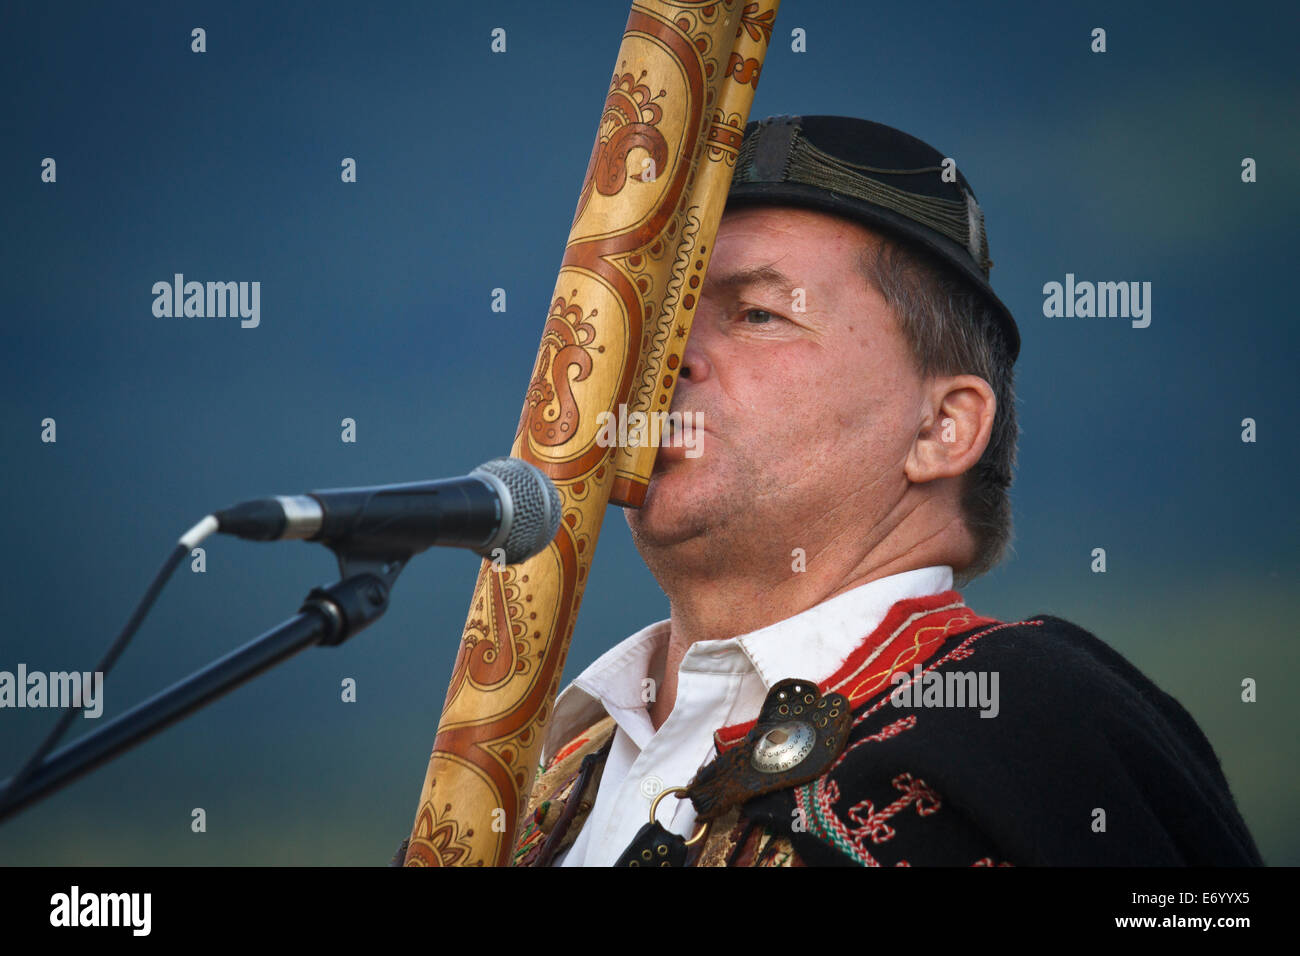 Slovacca musicista folk Lubomír Tatarka giocando il fujara - Le più tipiche slovacche strumento musicale. Nydek, Repubblica Ceca. Foto Stock